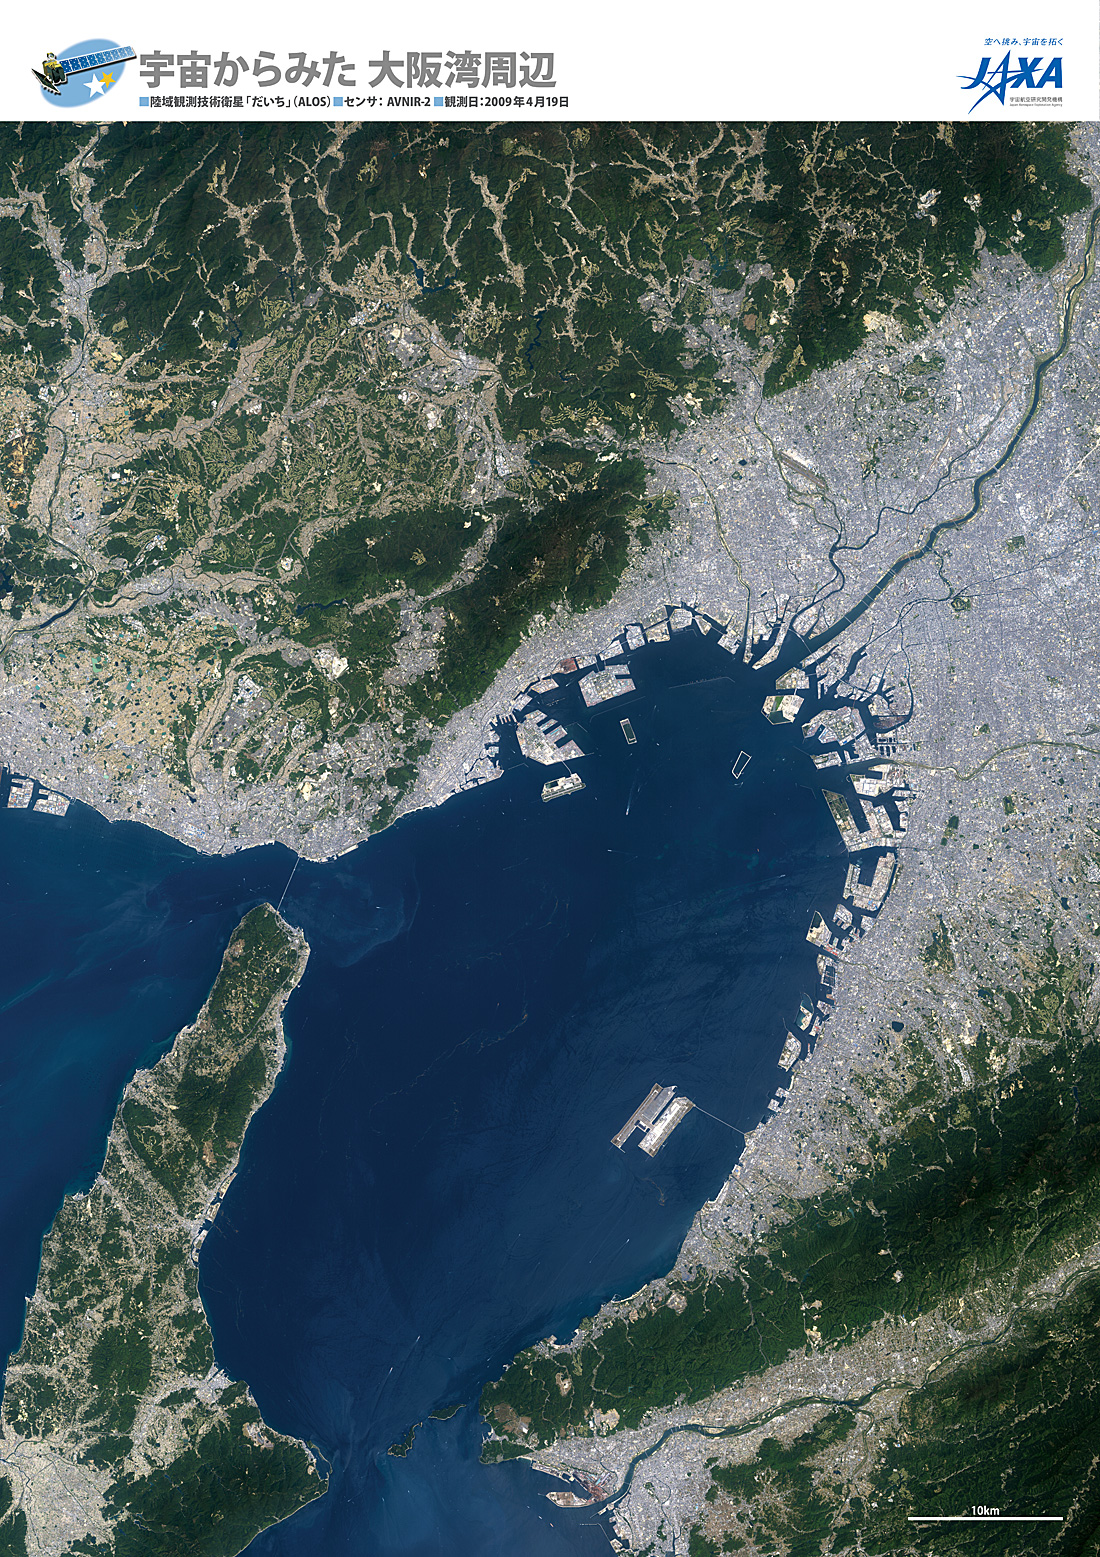 だいちから見た日本の都市 大阪湾周辺地域:衛星画像（ポスター仕上げ）